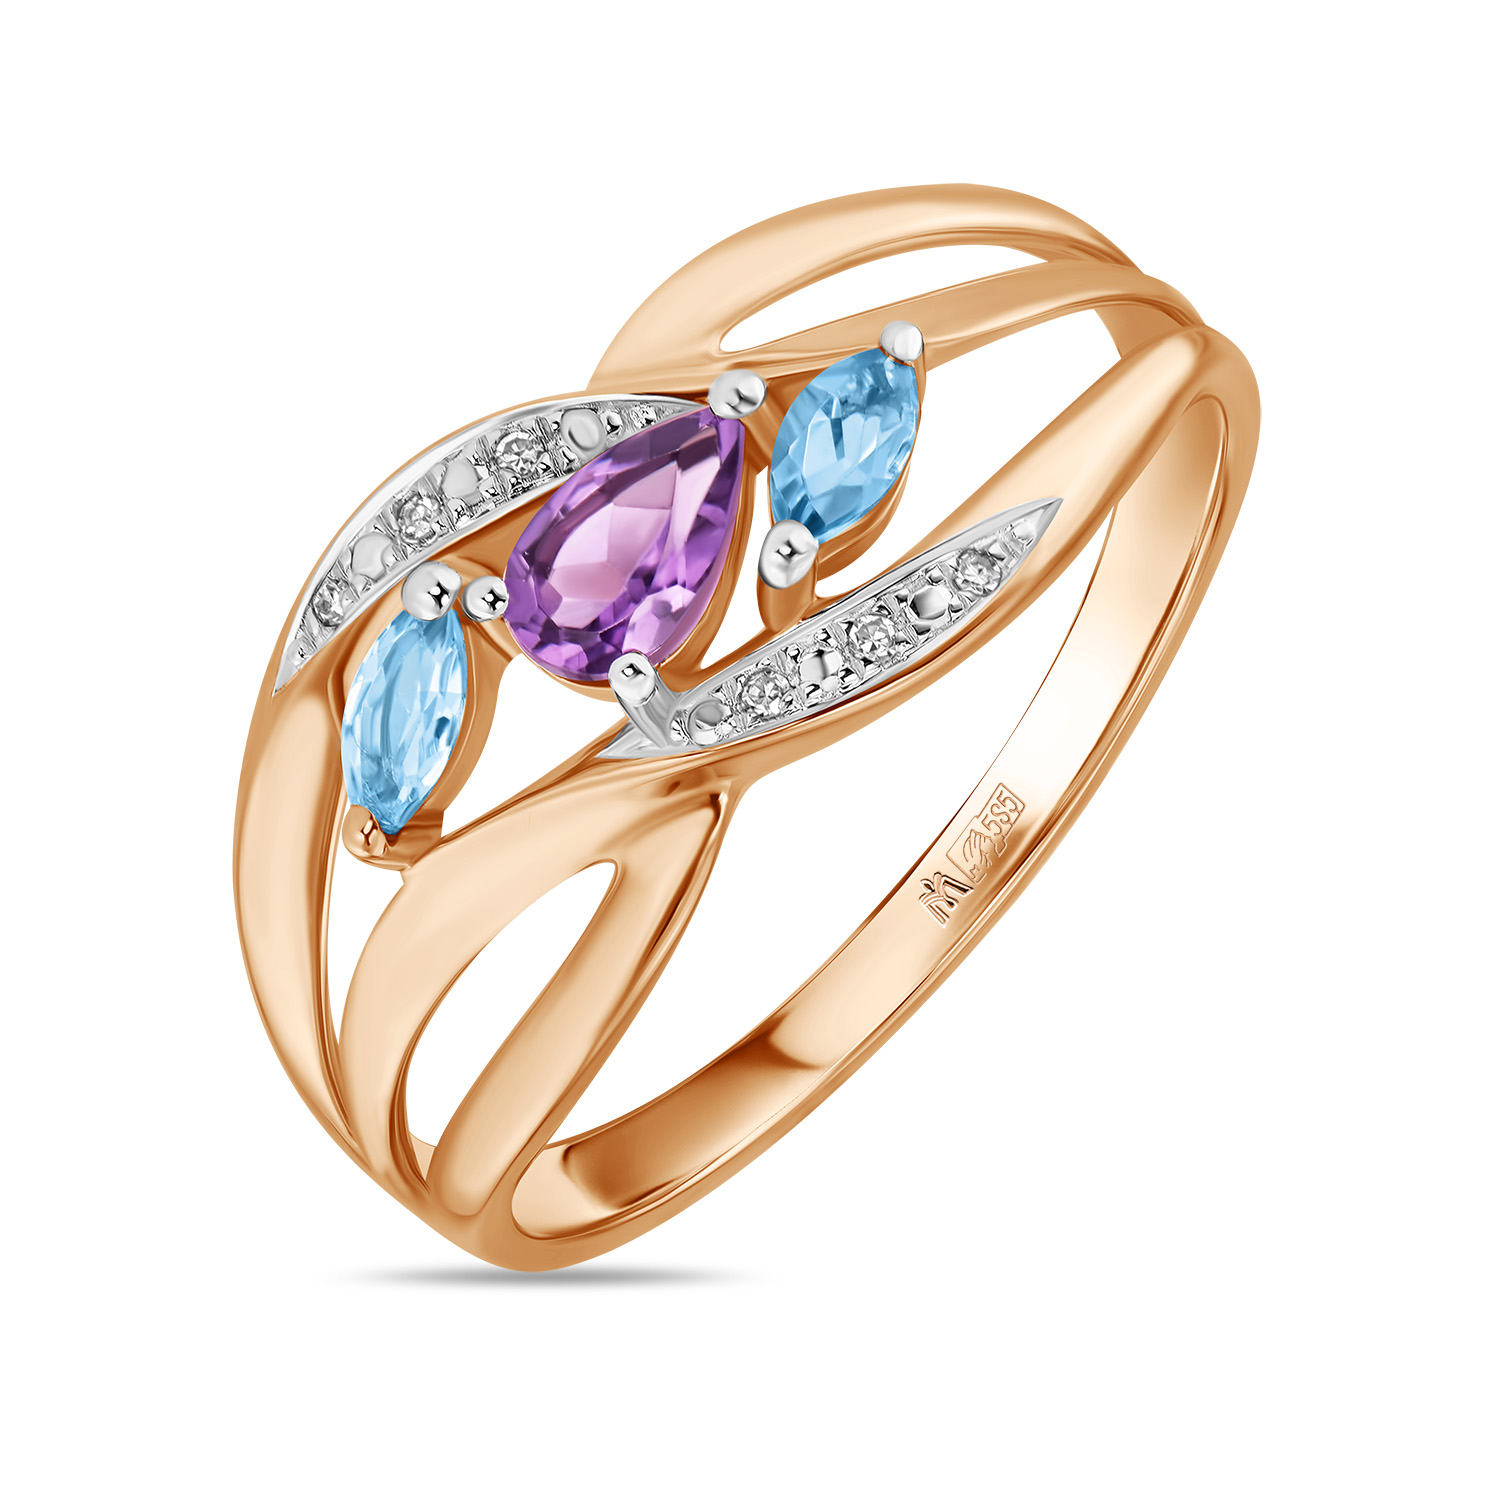 Кольца МЮЗ Золотое кольцо с аметистом, топазом и бриллиантами кольца мюз золотое кольцо с аметистом топазом цитрином бриллиантами и цветными бриллиантами